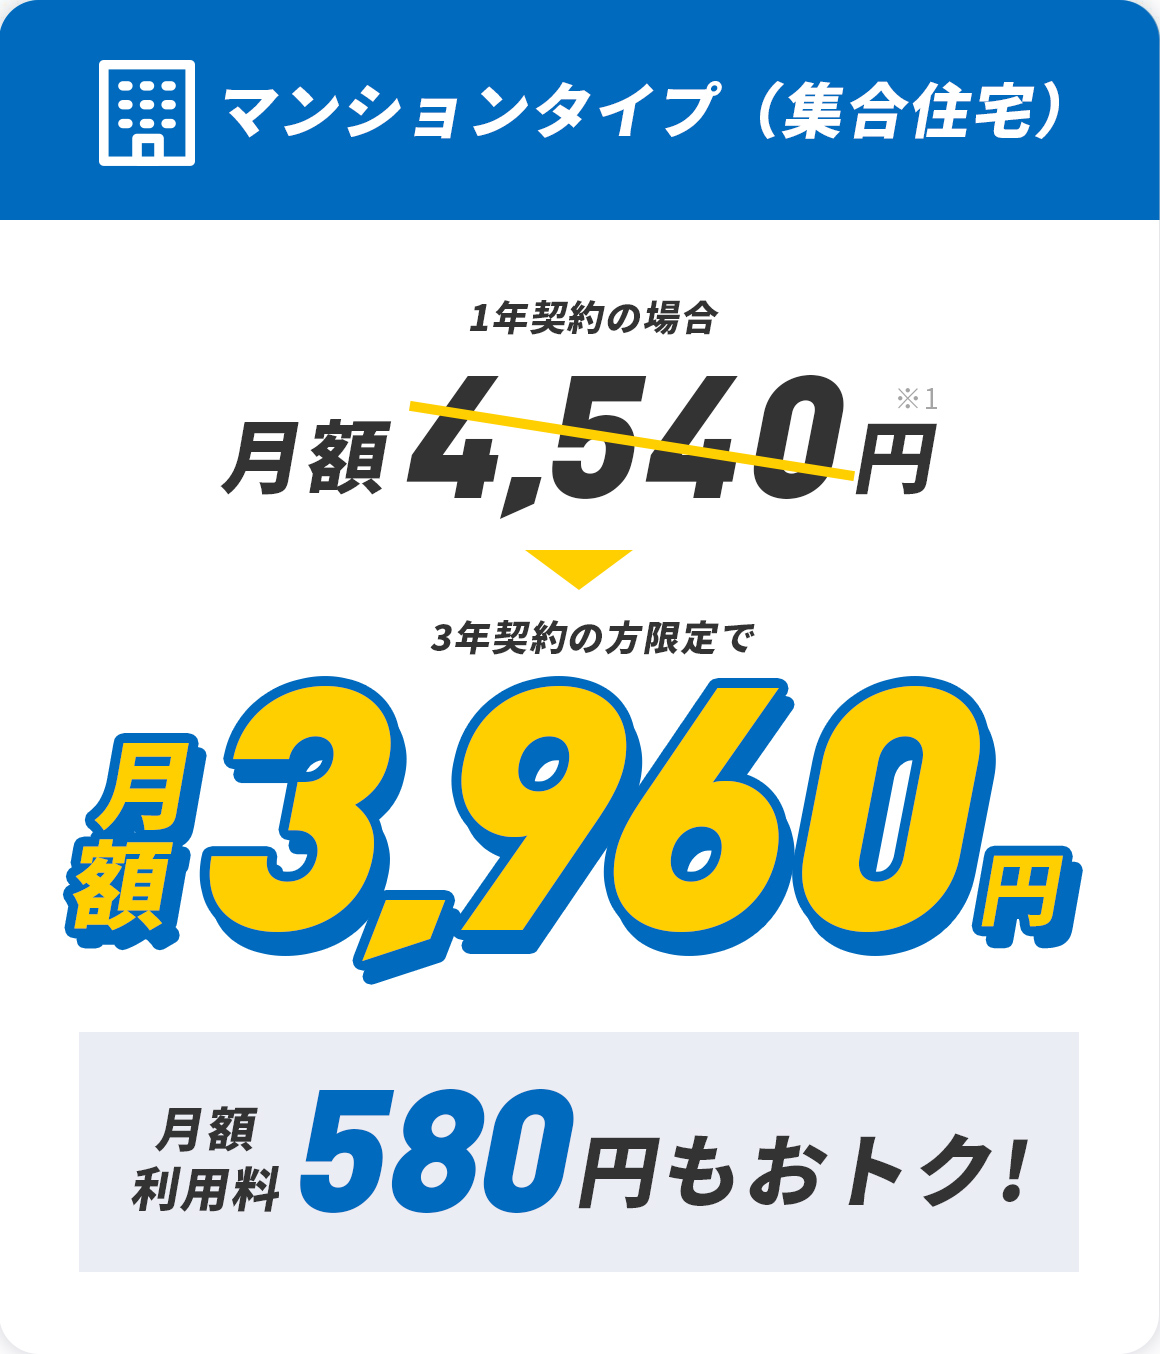 マンションタイプ 集合住宅 月額利用料530円もおトク！